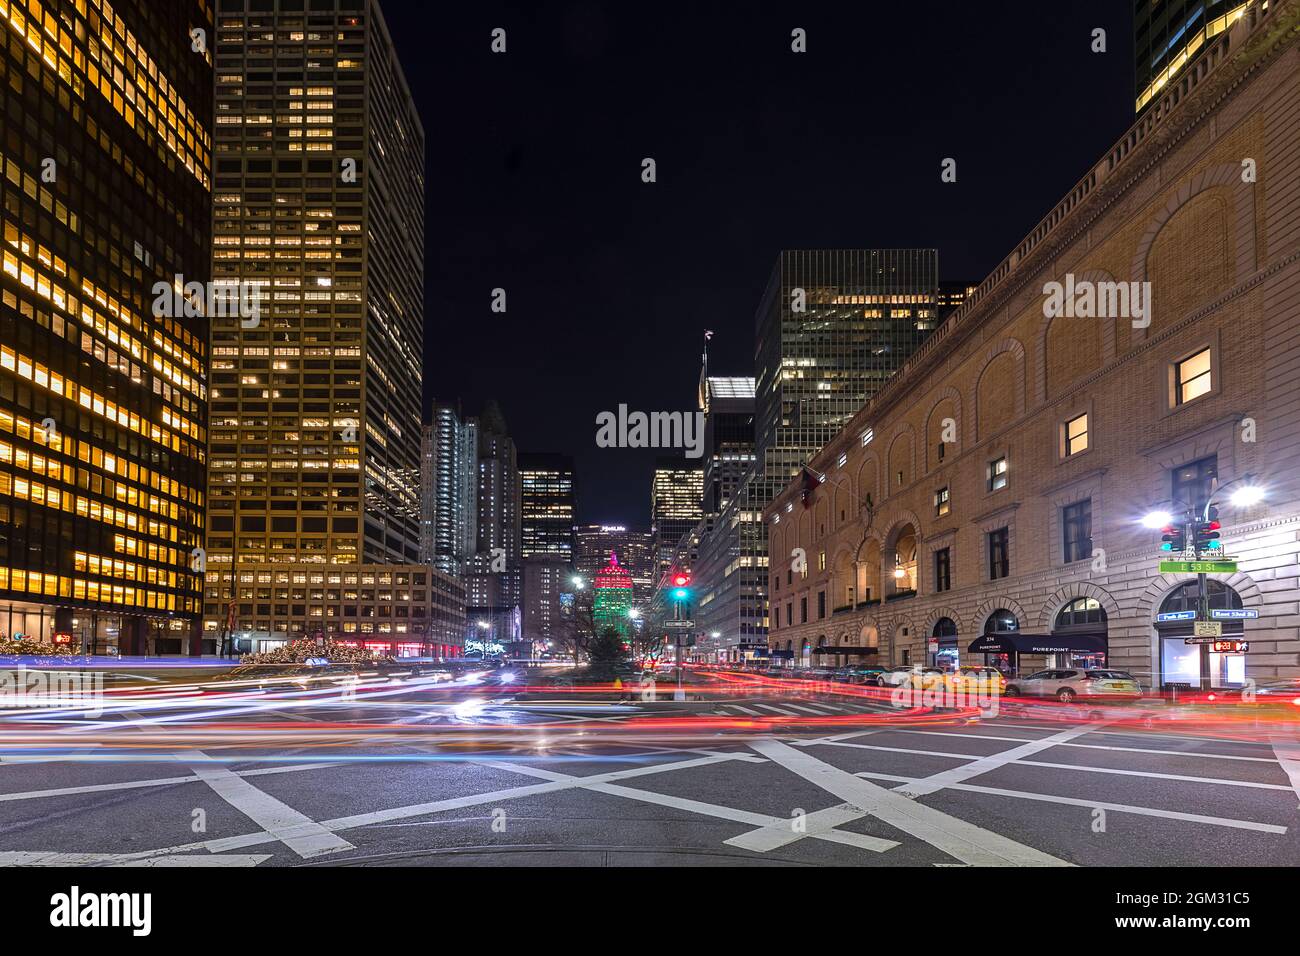 Criss Crossing New York City - der Autoverkehr erzeugt farbenfrohe Lichtstreifen in Midtown Manhattan in NYC. Die Stadt ist in Weihnachtskolo verkleidet Stockfoto